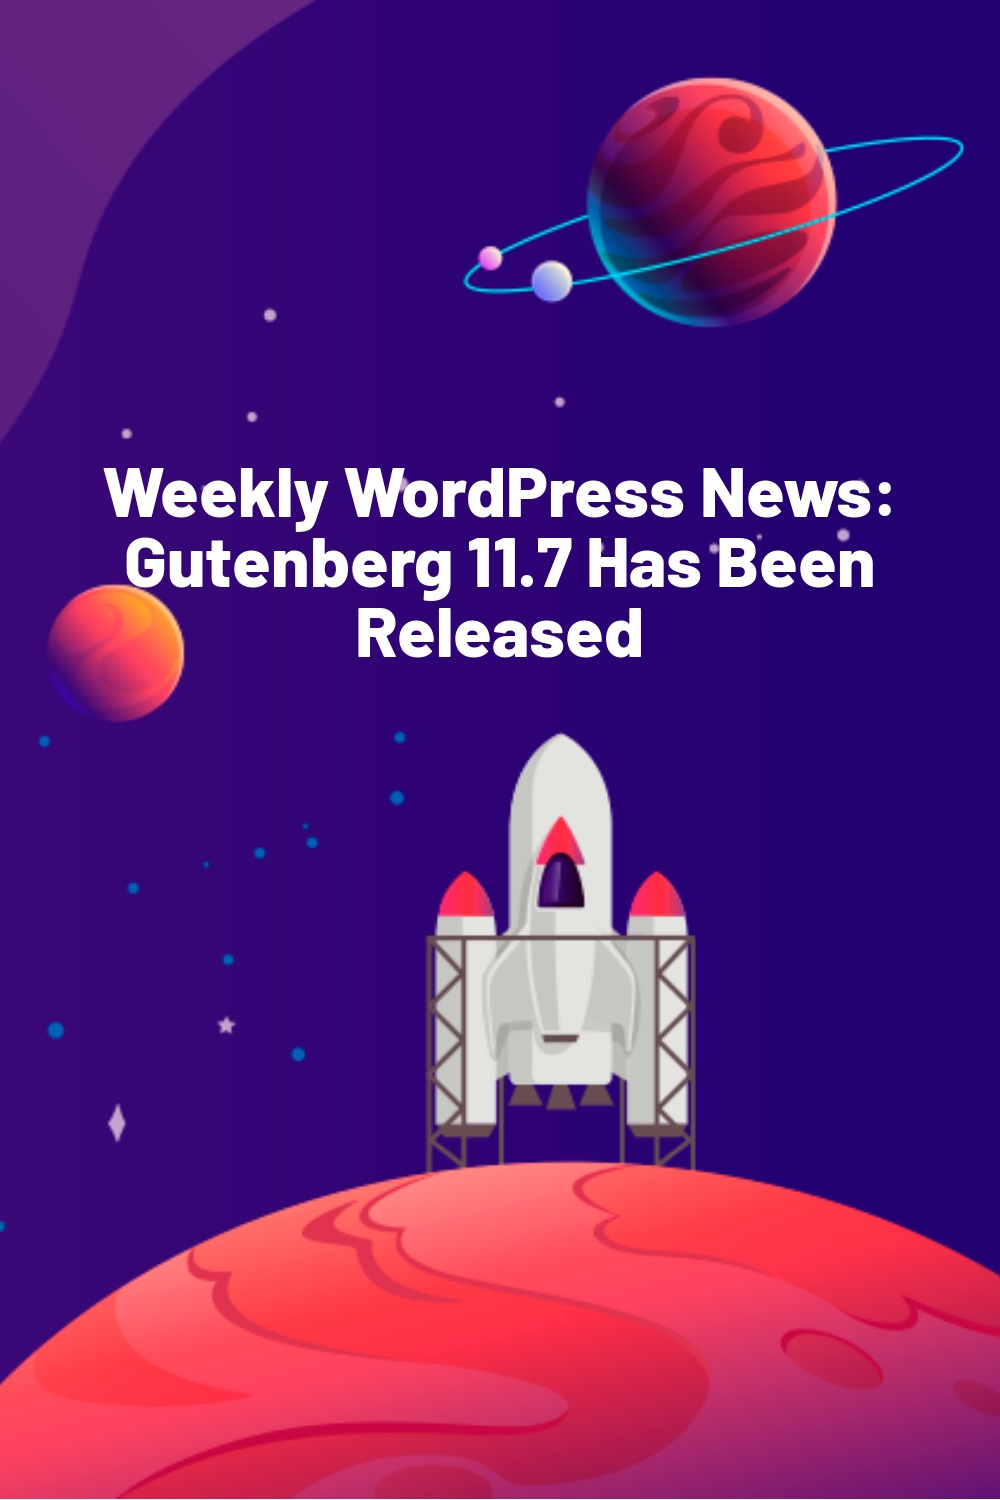 Weekly WordPress News: Gutenberg 11.7 Has Been Released